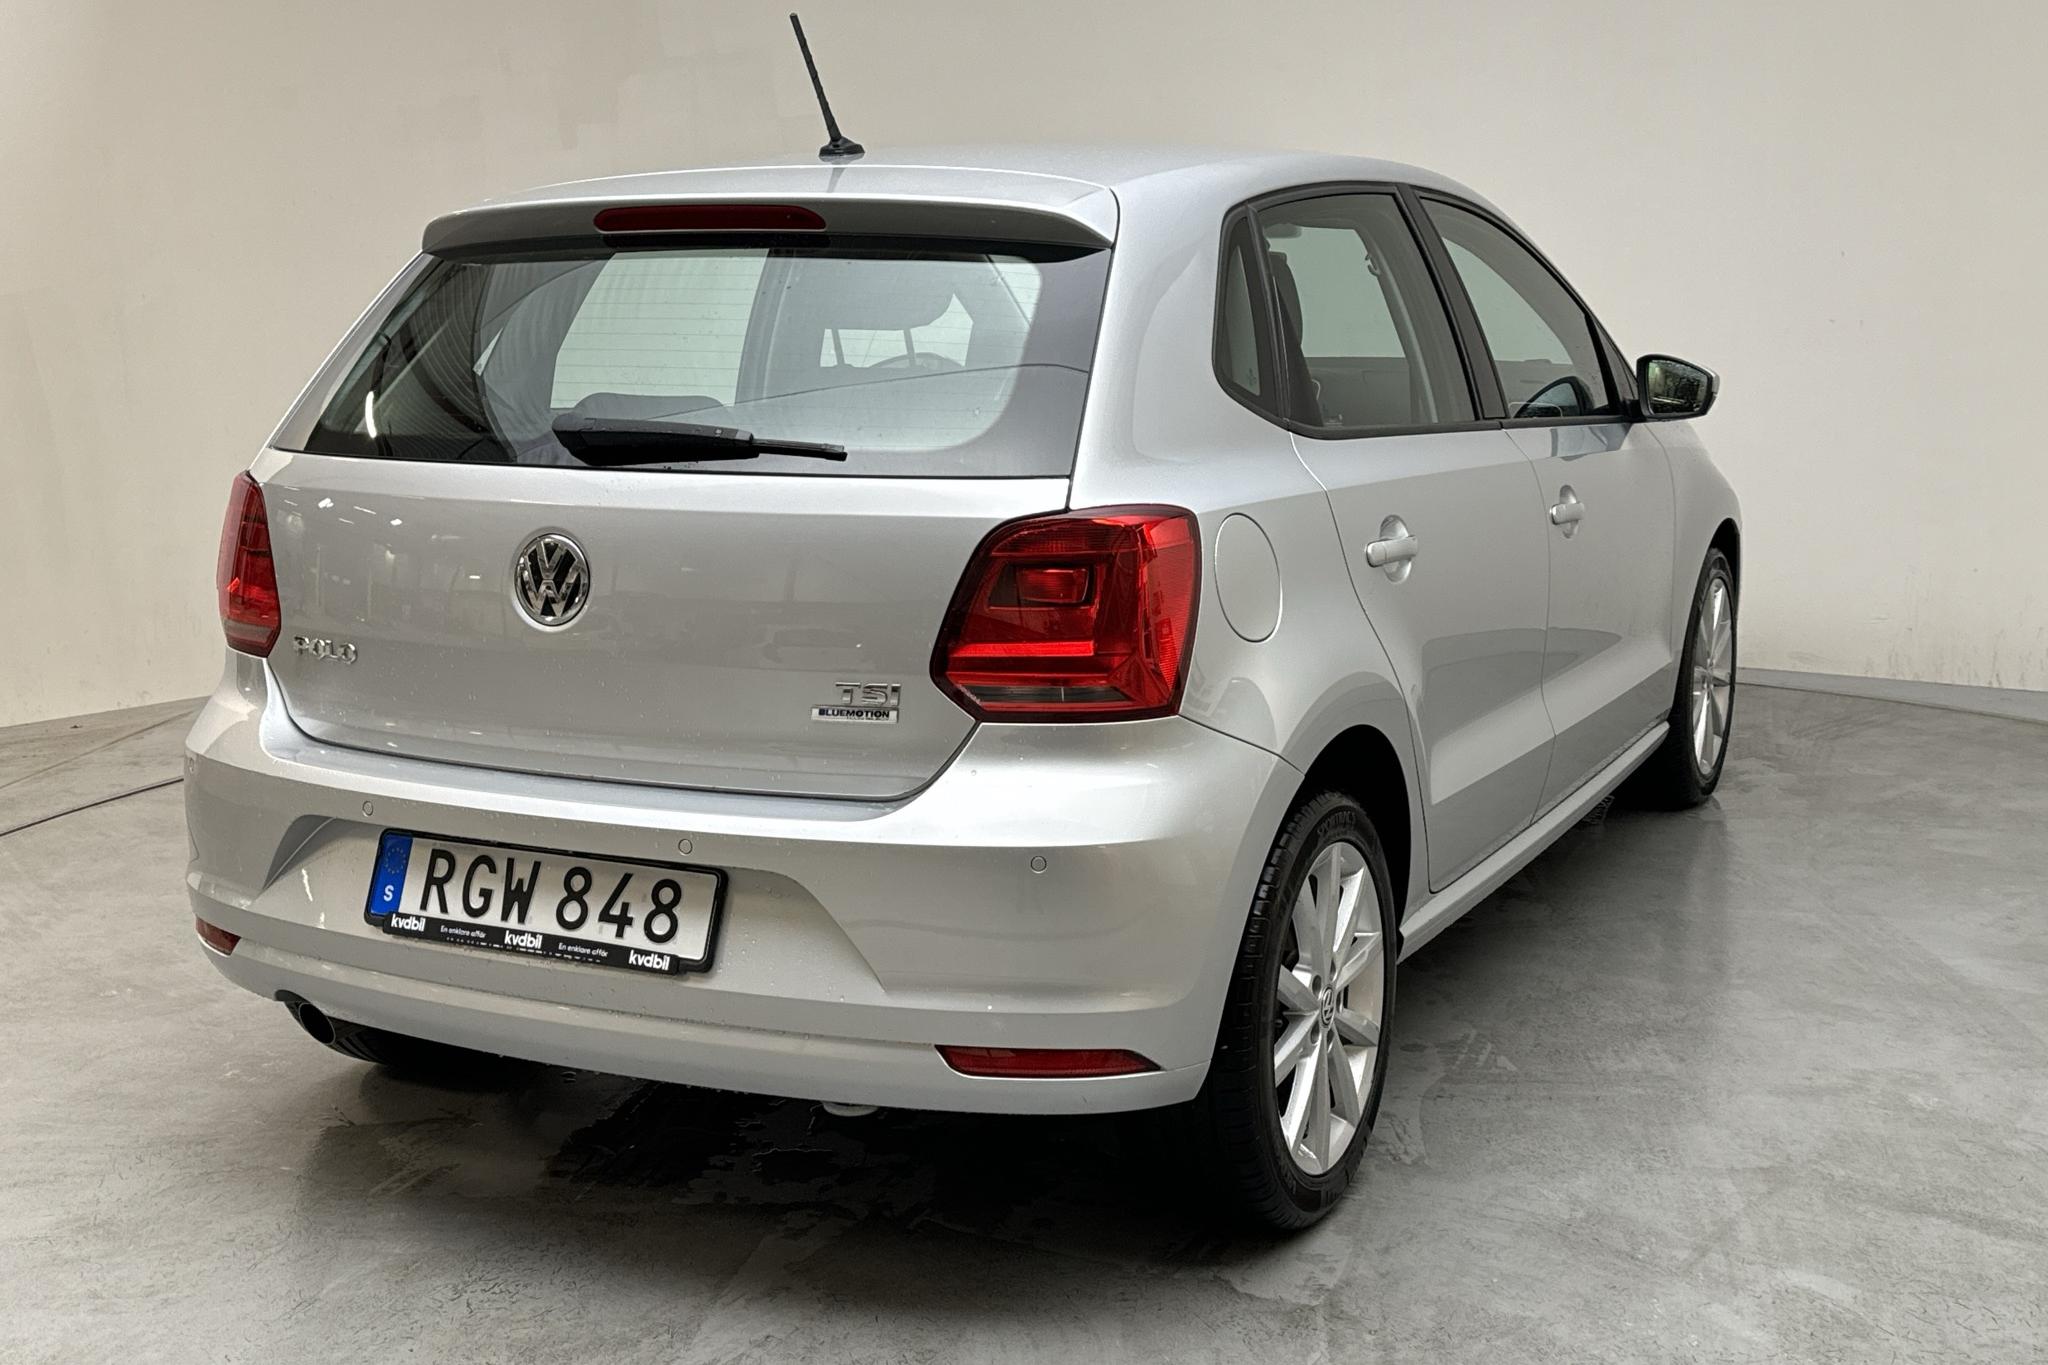 VW Polo 1.2 TSI 5dr (90hk) - 78 400 km - Automatic - silver - 2017